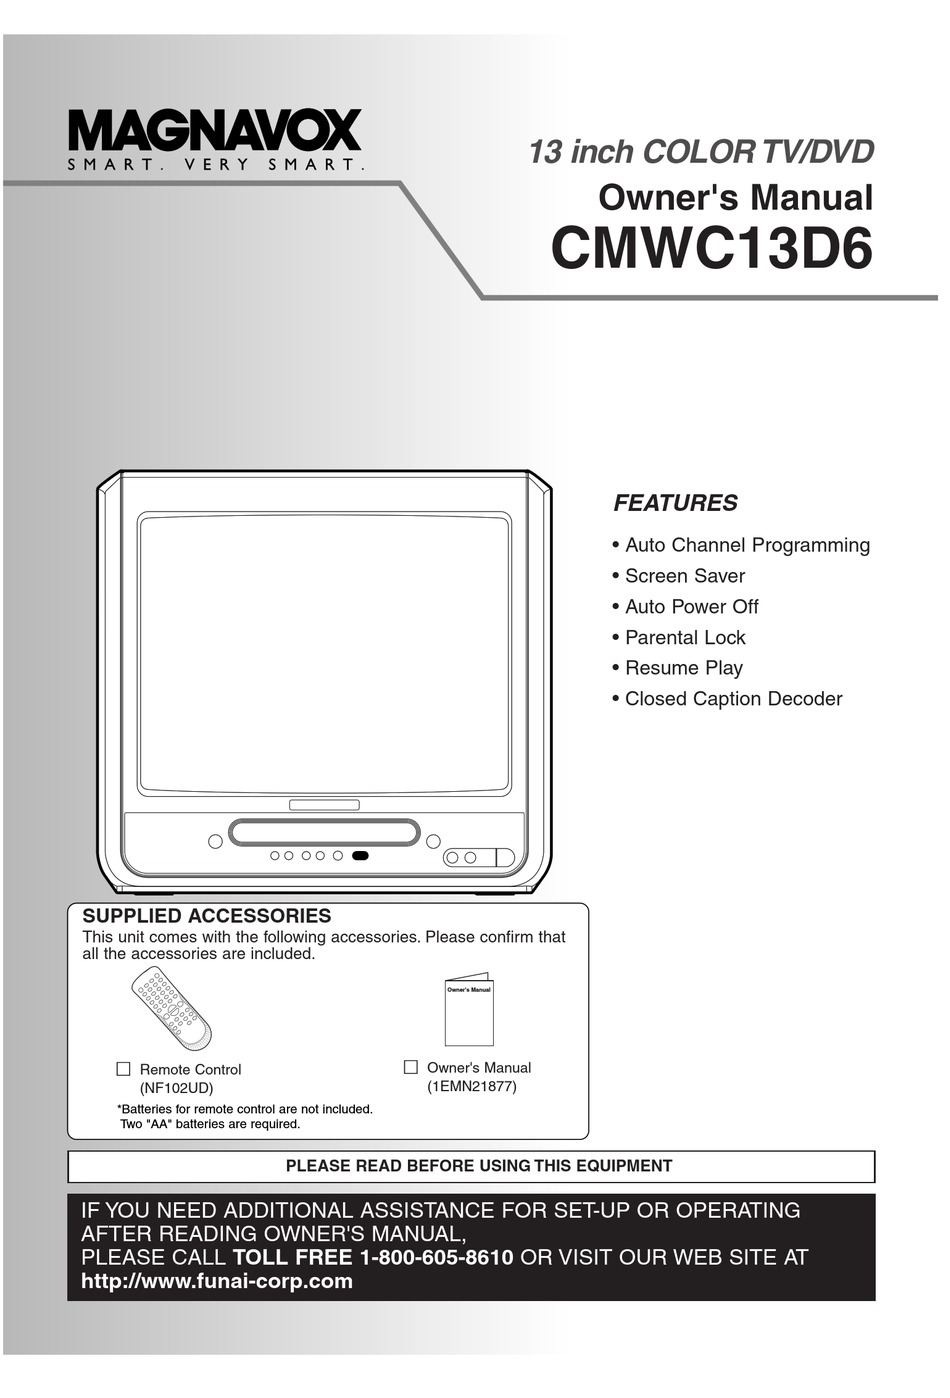 MAGNAVOX CMWC13D6 OWNER'S MANUAL Pdf Download | ManualsLib